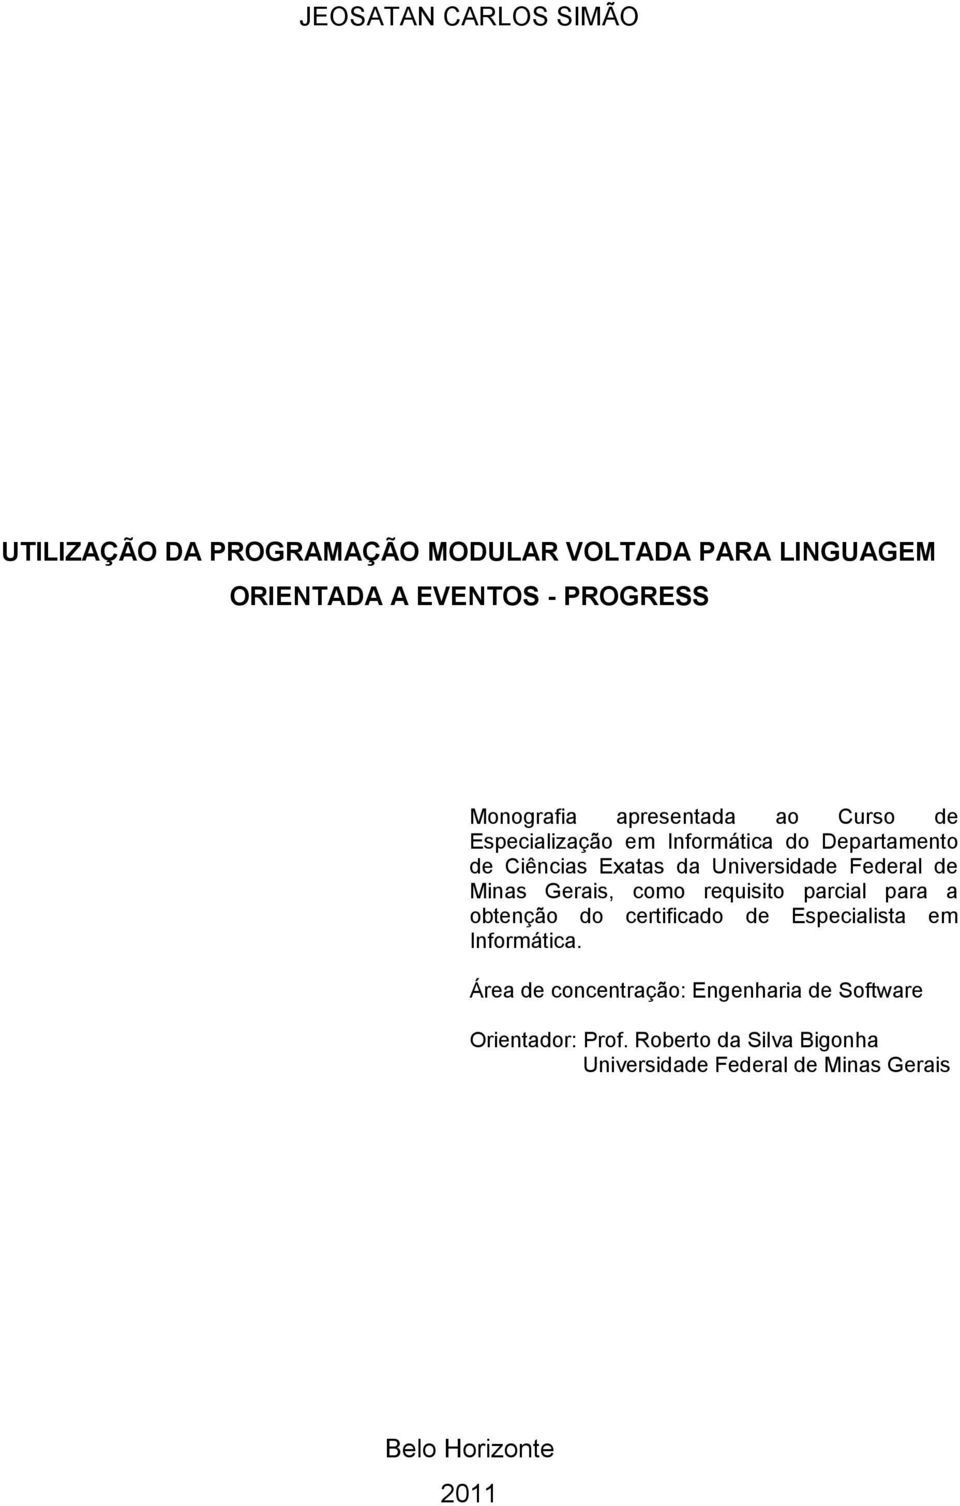 Minas Gerais, como requisito parcial para a obtenção do certificado de Especialista em Informática.